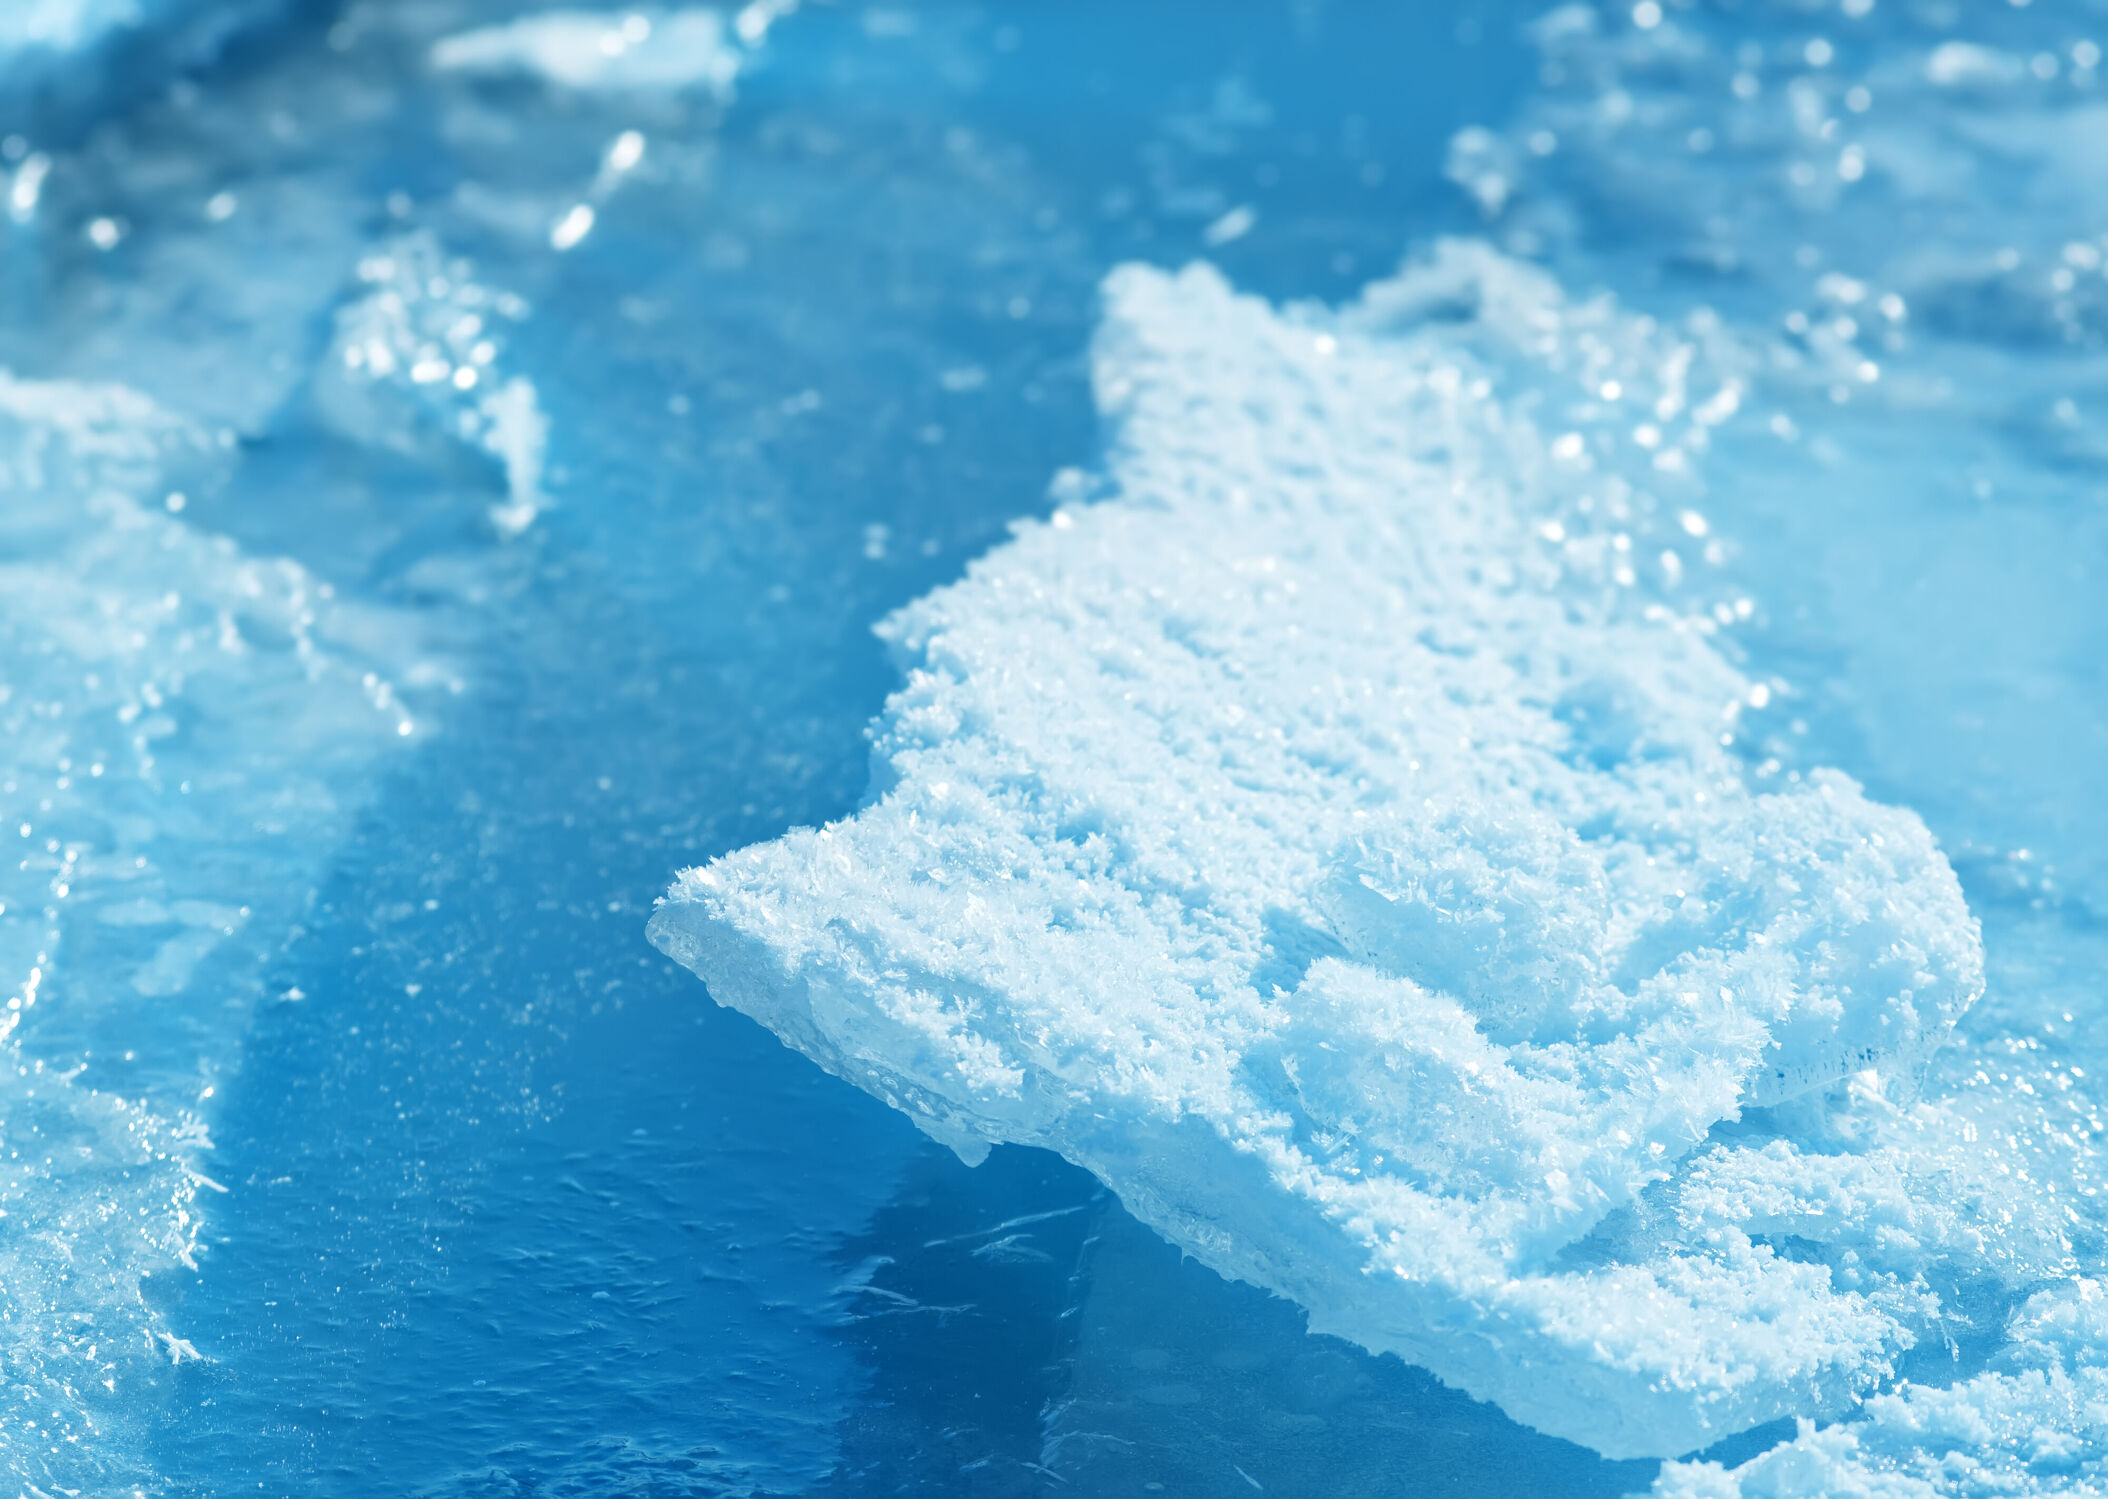 Bild mit Wasser, Winter, Schnee, Eis, Gewässer, Blau, Meer, Kälte, Frost, gefroren